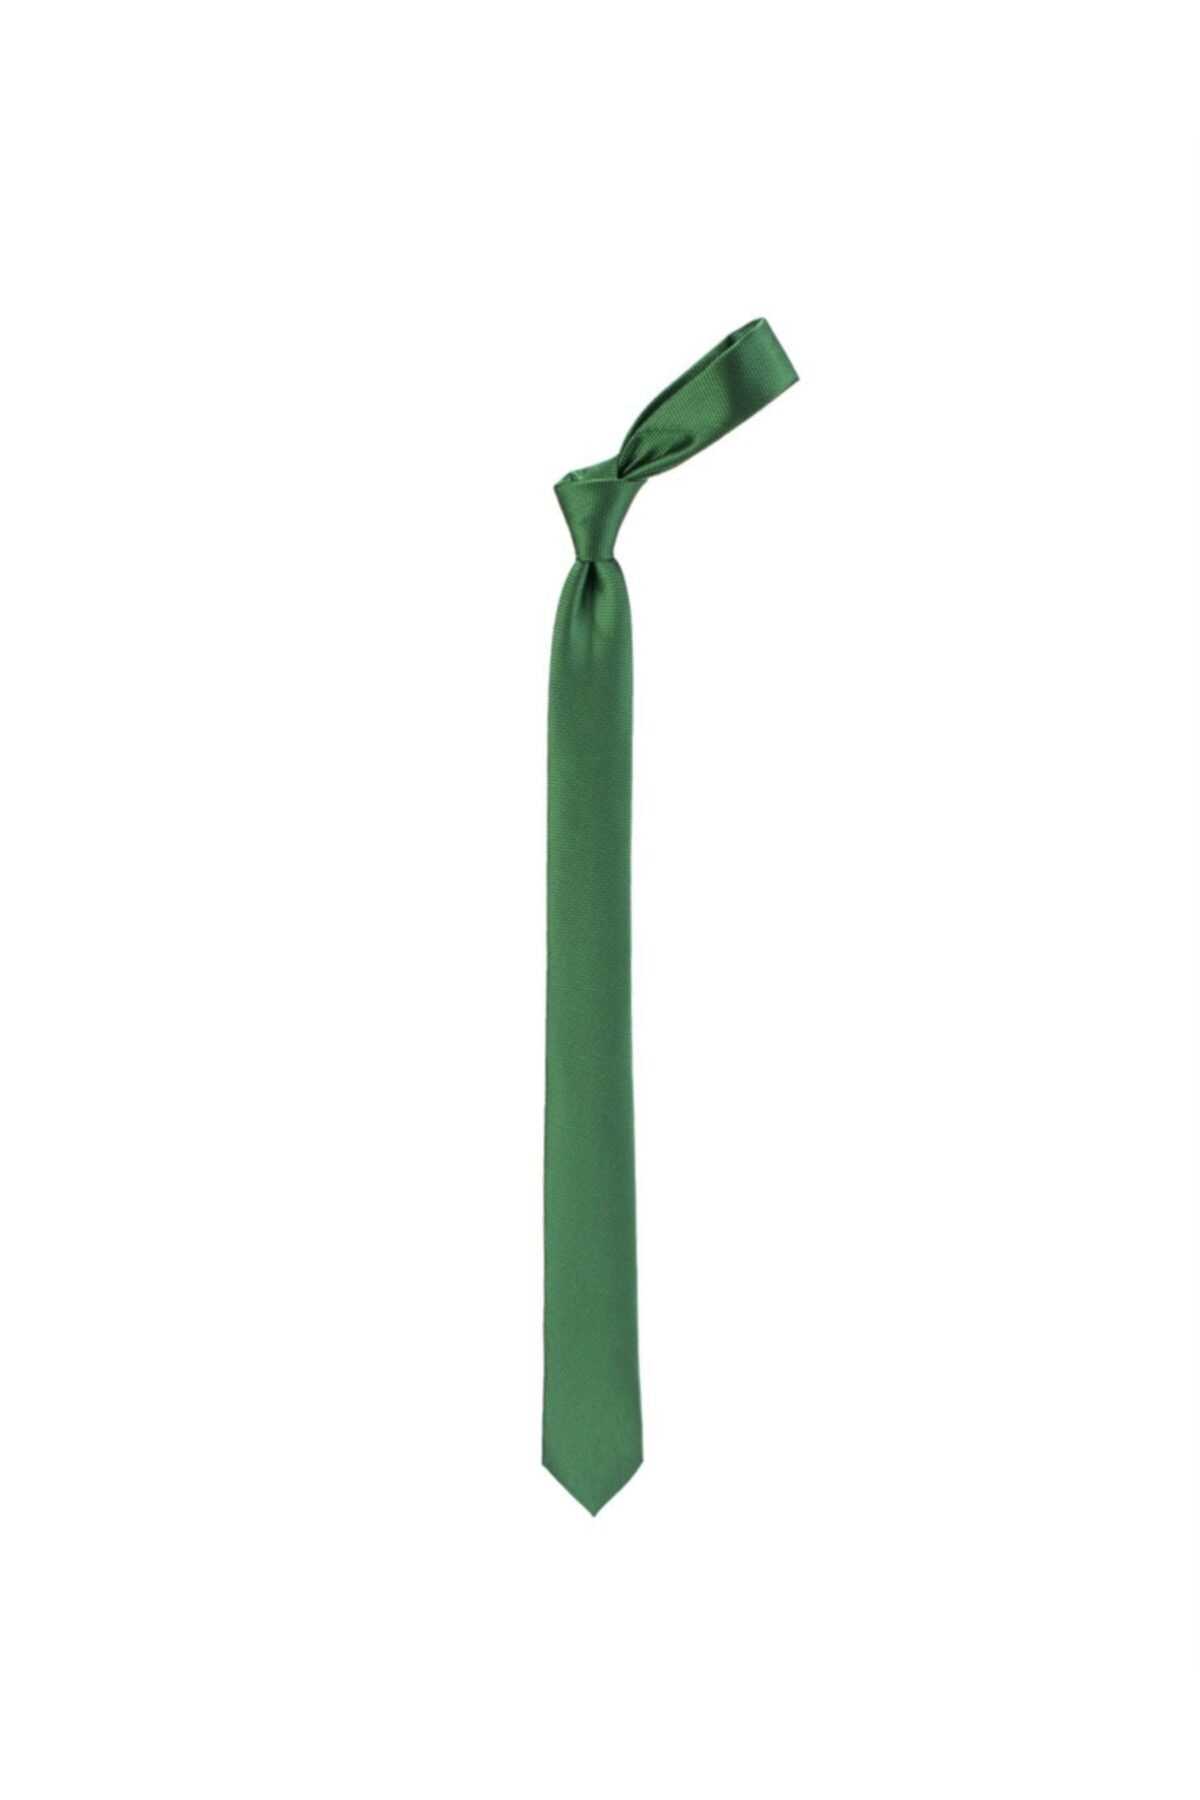 فروش کراوات مردانه جدید شیک Tudors رنگ سبز کد ty4059502